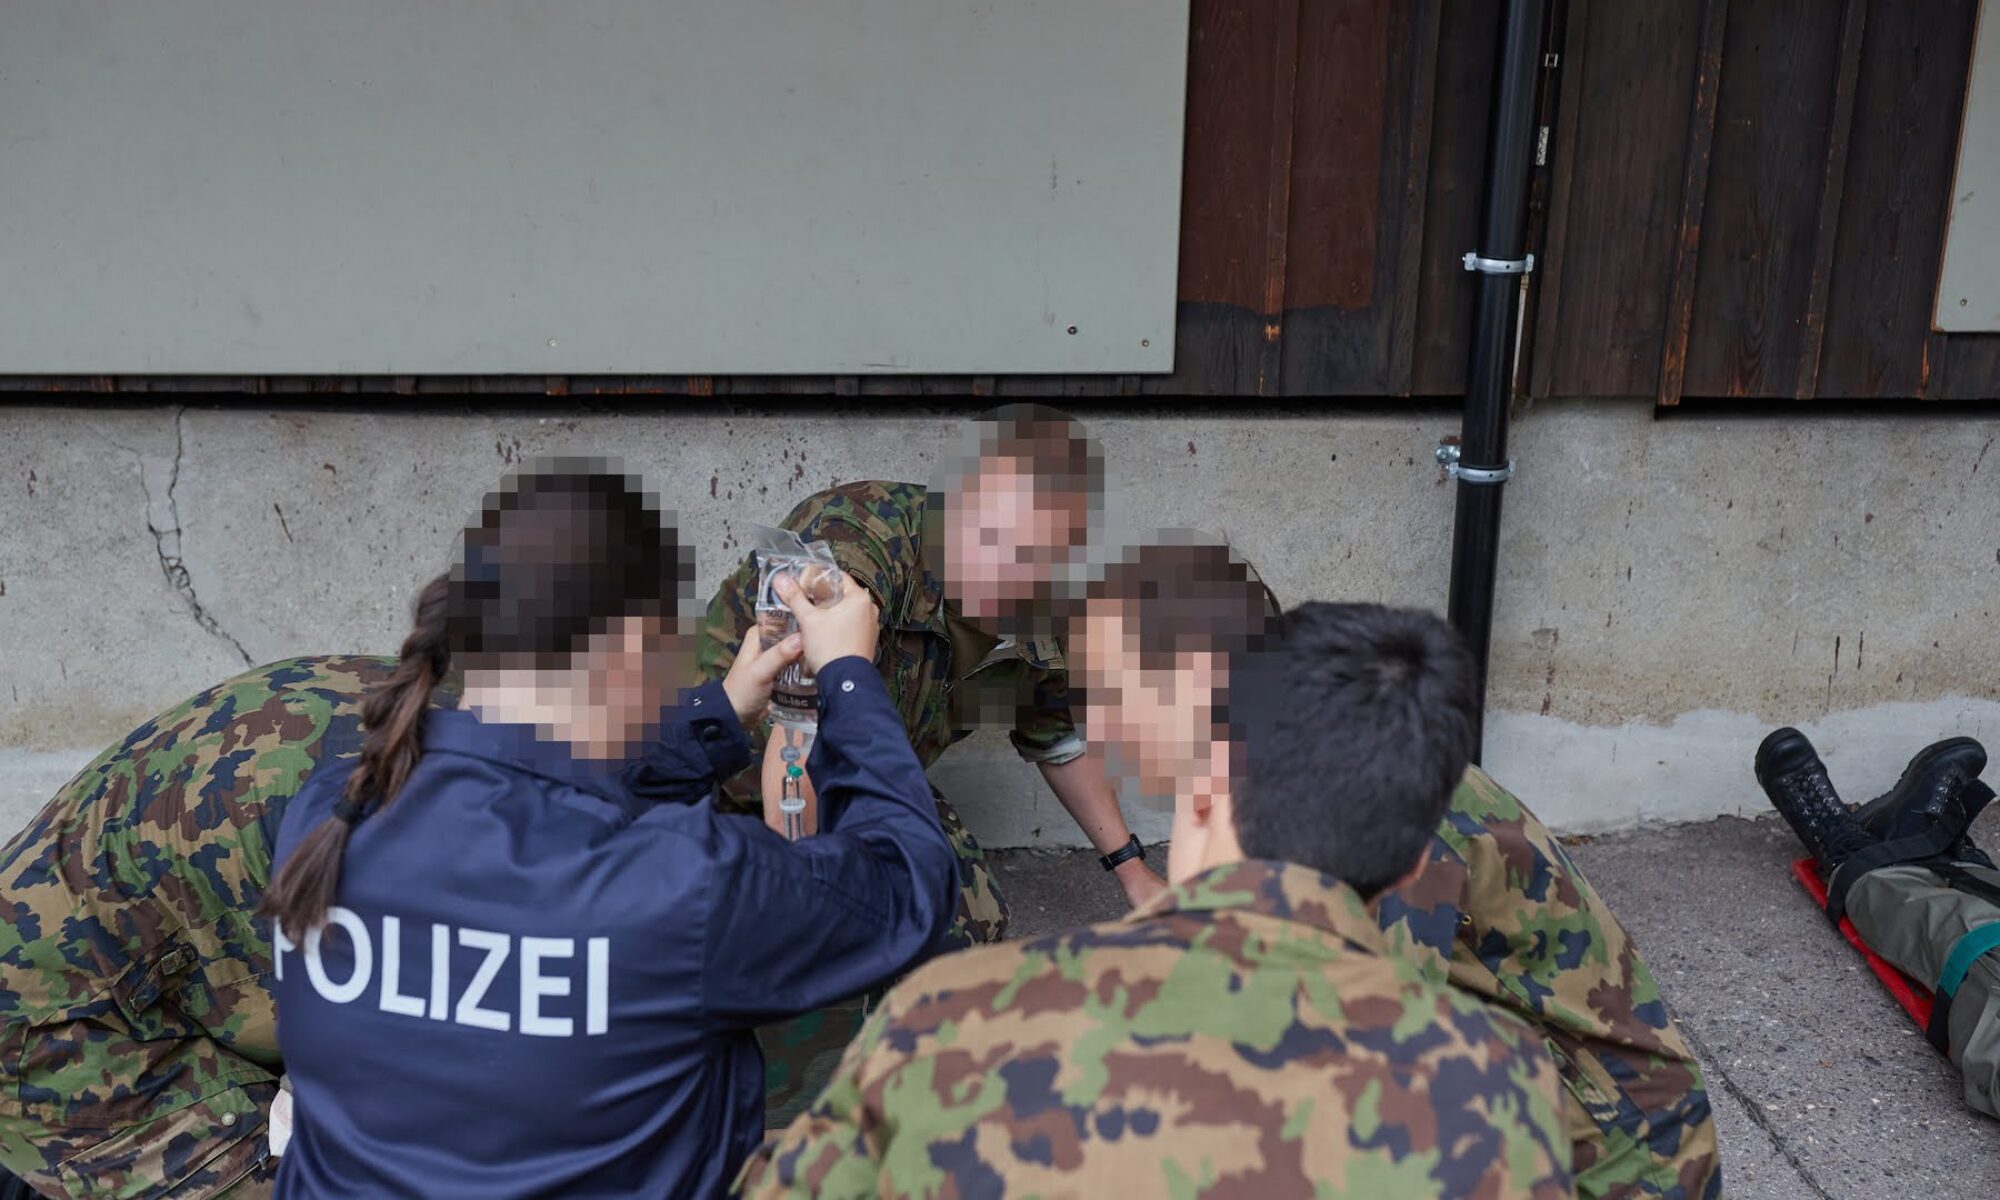 Militärpolizeiverband Zentralschweiz